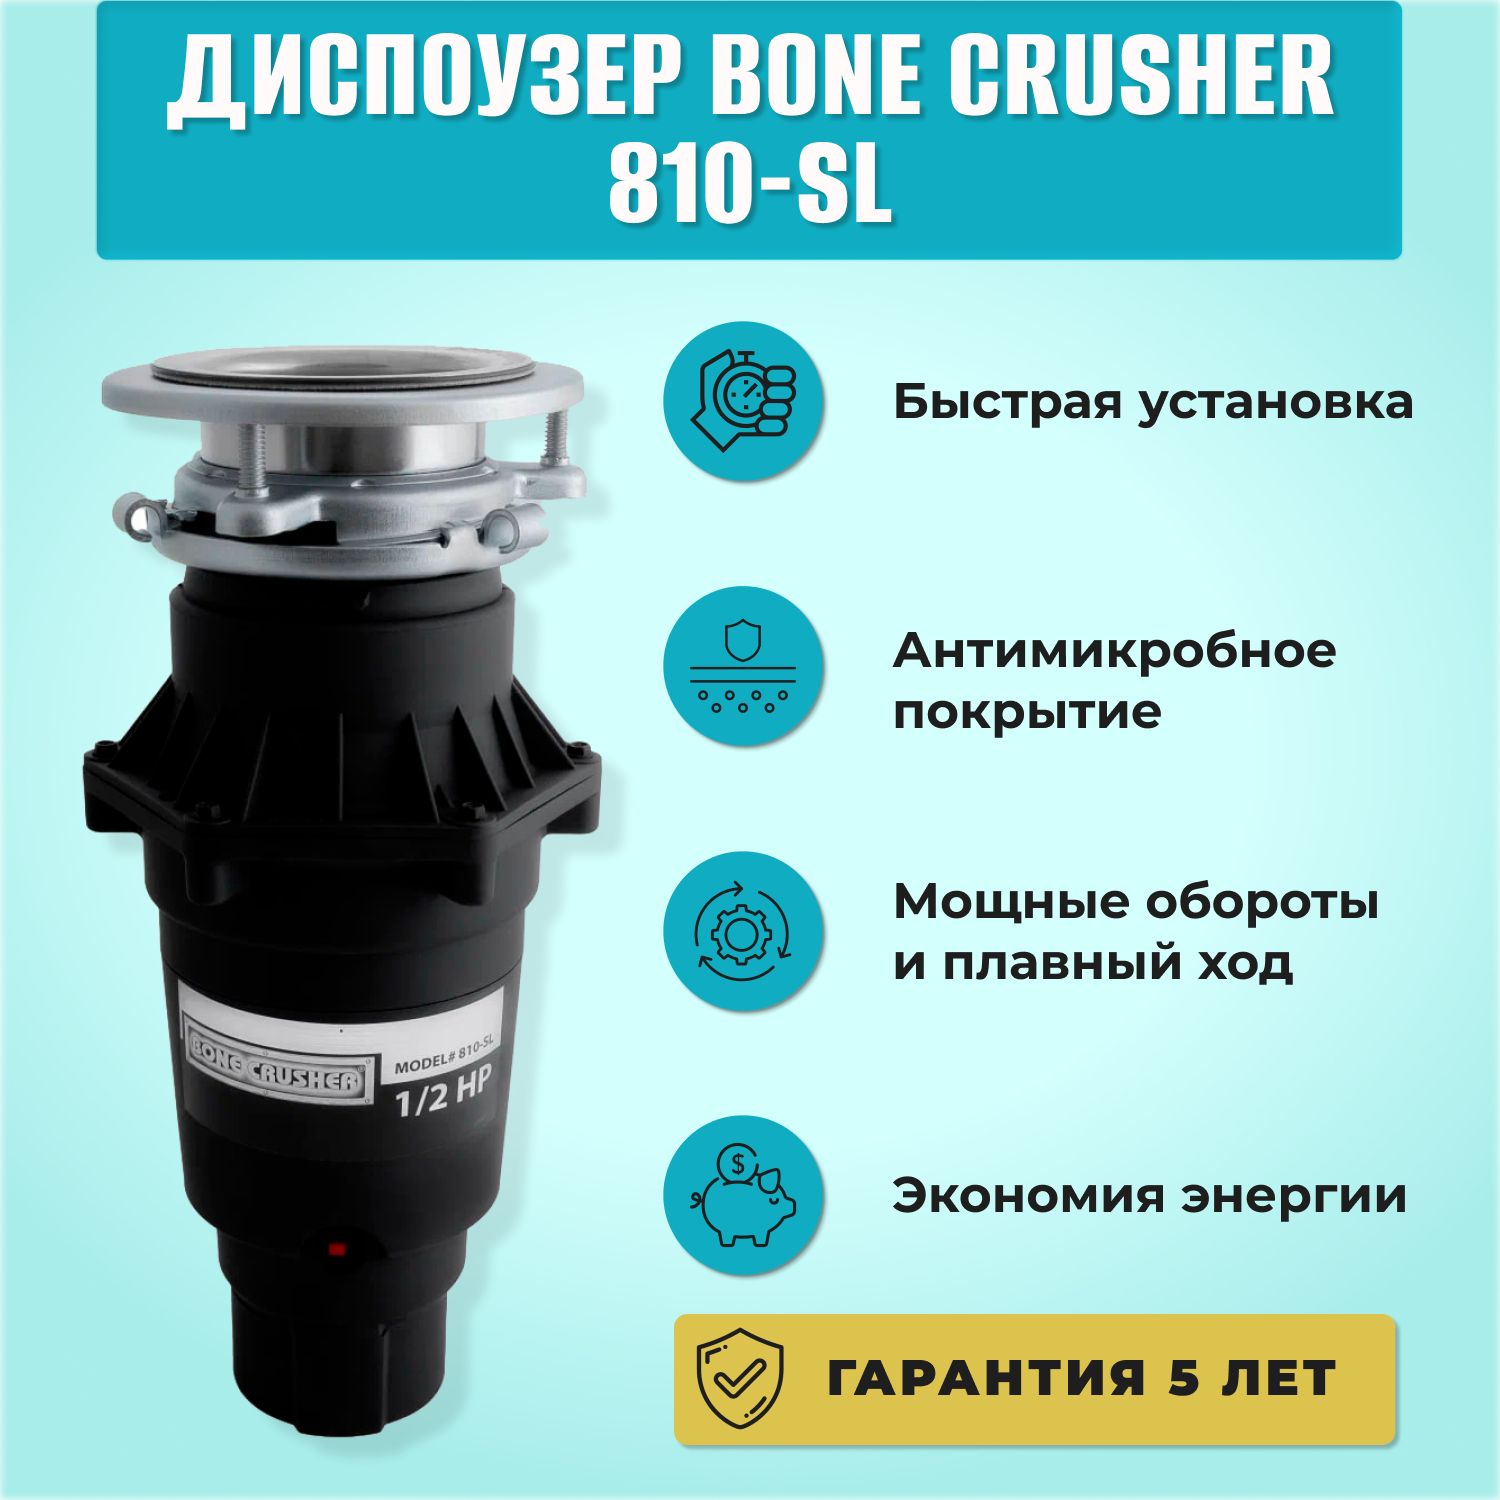 Bone crusher купить. Bone crusher BC 810. Bone crusher 810/Slim line. Bone crusher BC 810 Slim line. Bone crusher BC-810-SL.